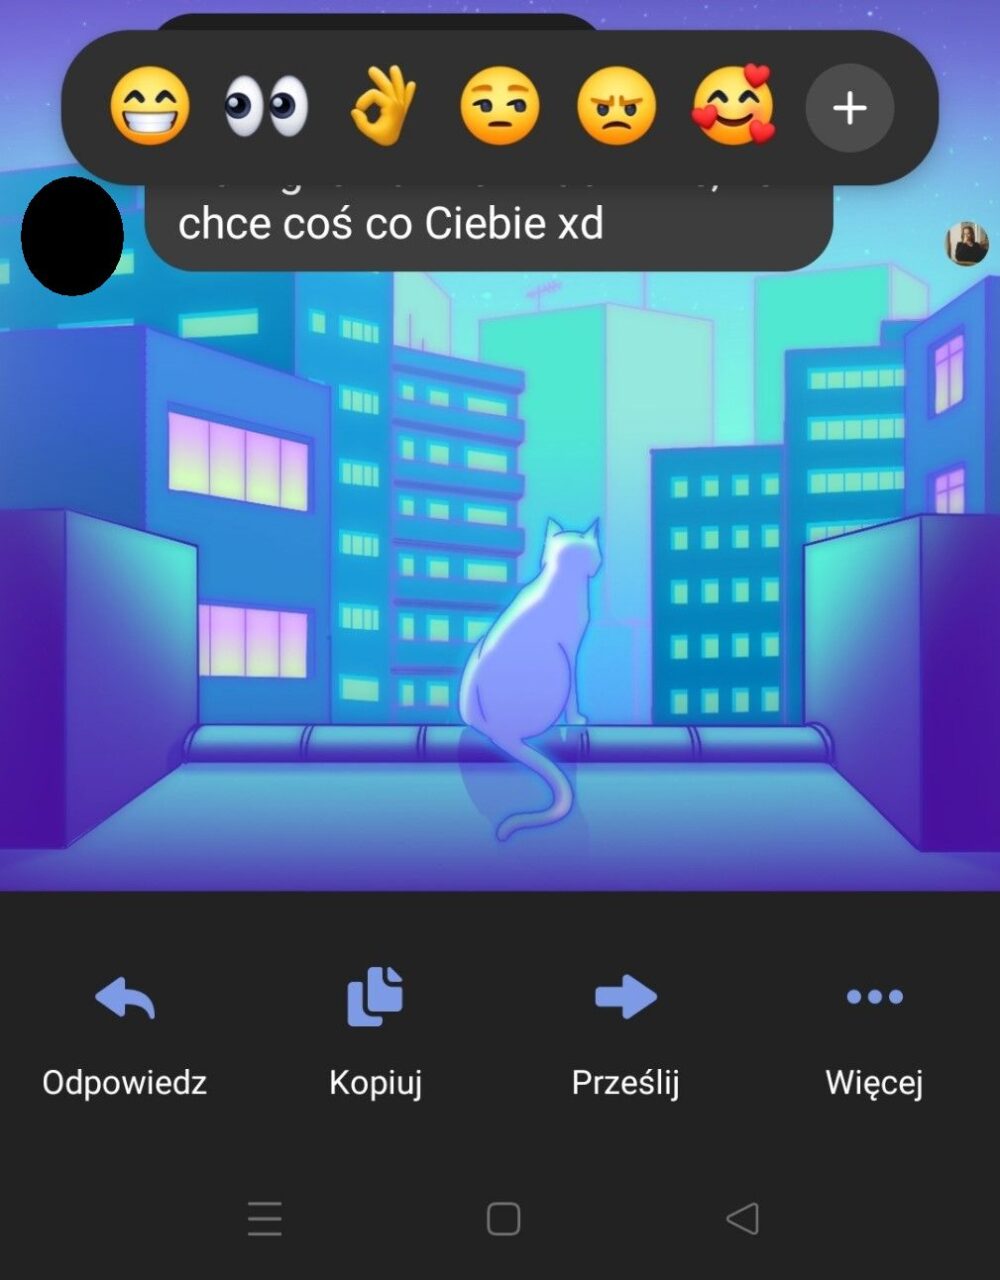 Zrzut ekranu z aplikacji komunikacyjnej Messenger przedstawiający wiadomość z emoji oraz w tle ilustrację kota patrzącego na nocne miasto.